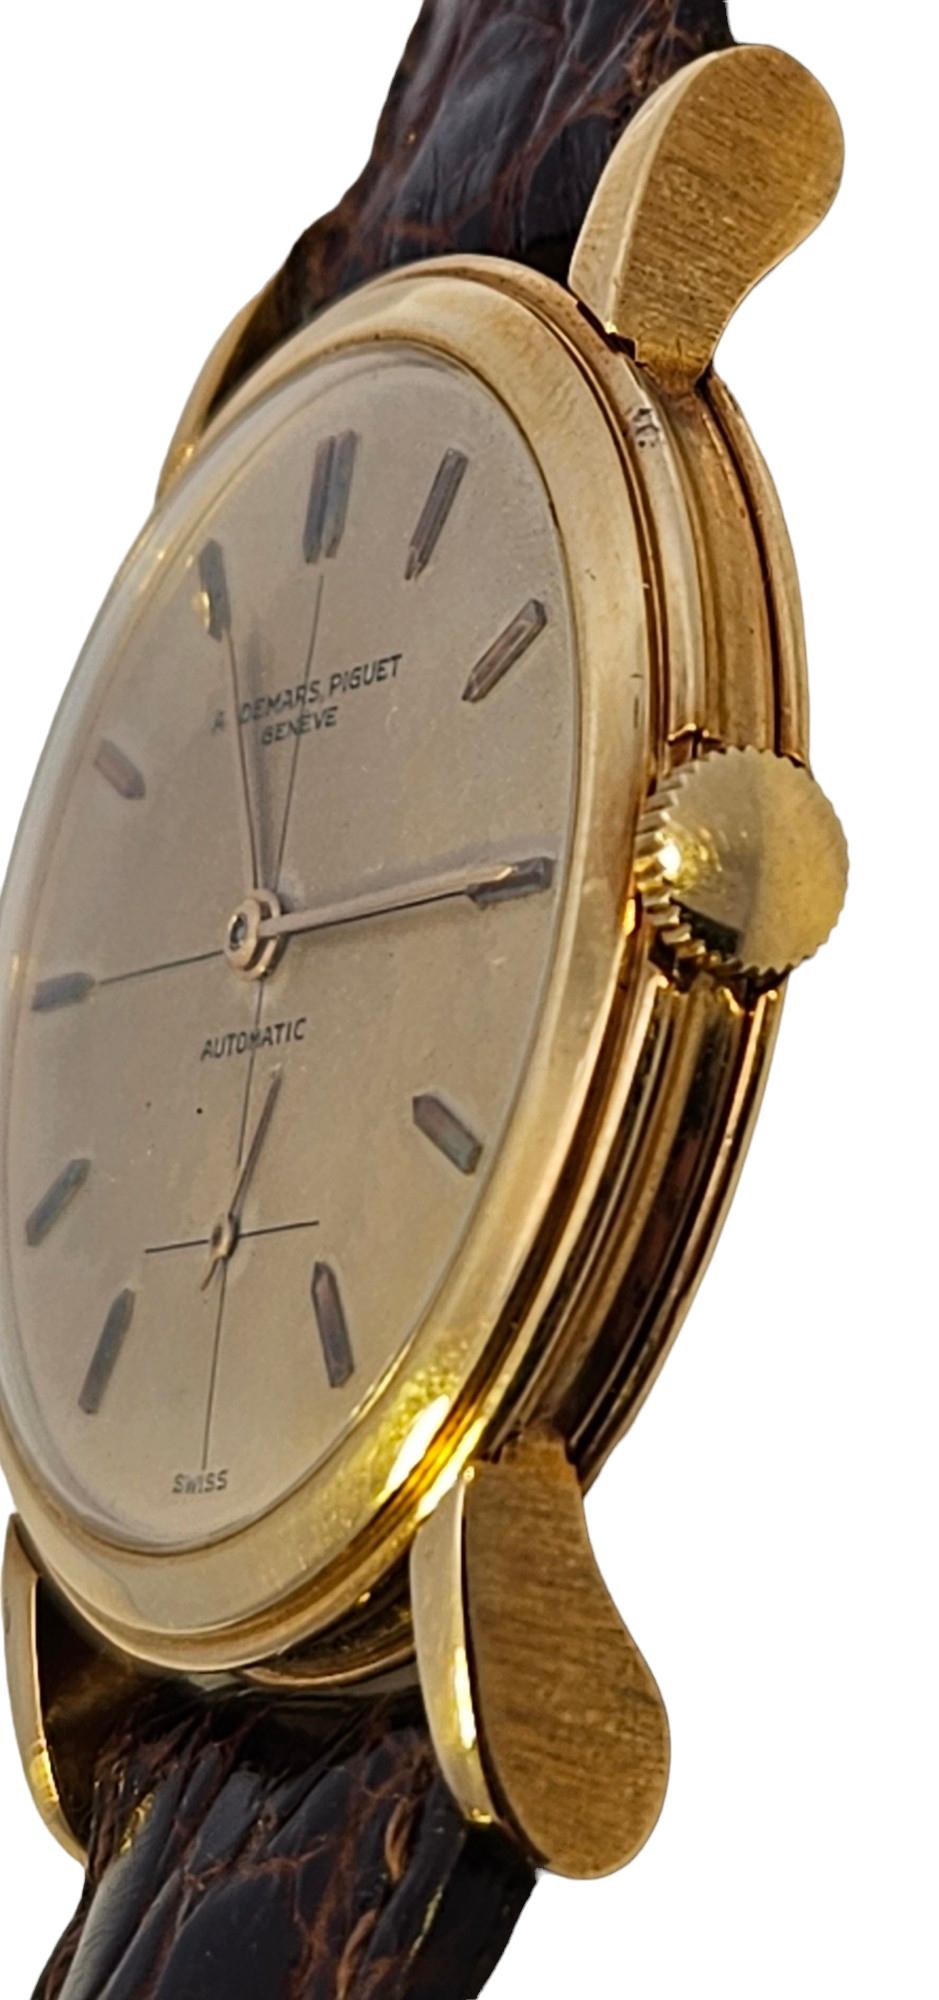 18 Kt Gold Audemars Piguet Cal K2070 Wrist Watch Collectors Automatic For Sale 13